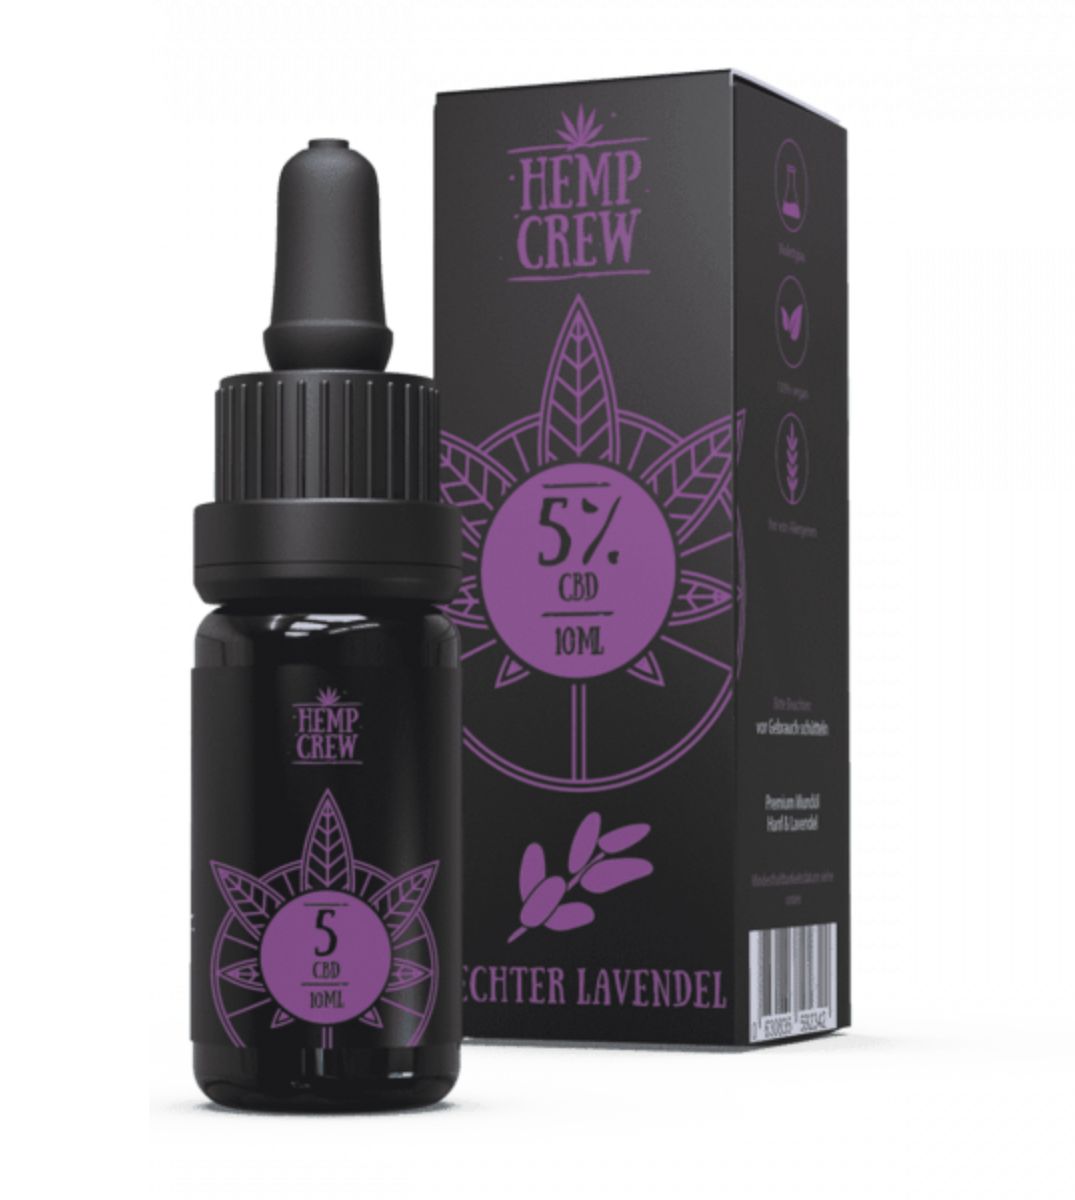 HEMP CREW 5% Echter Lavendel CBD Öl, 10ml in dunkler Glasflasche mit Pipette, Verpackung mit Lavendelblüten-Design